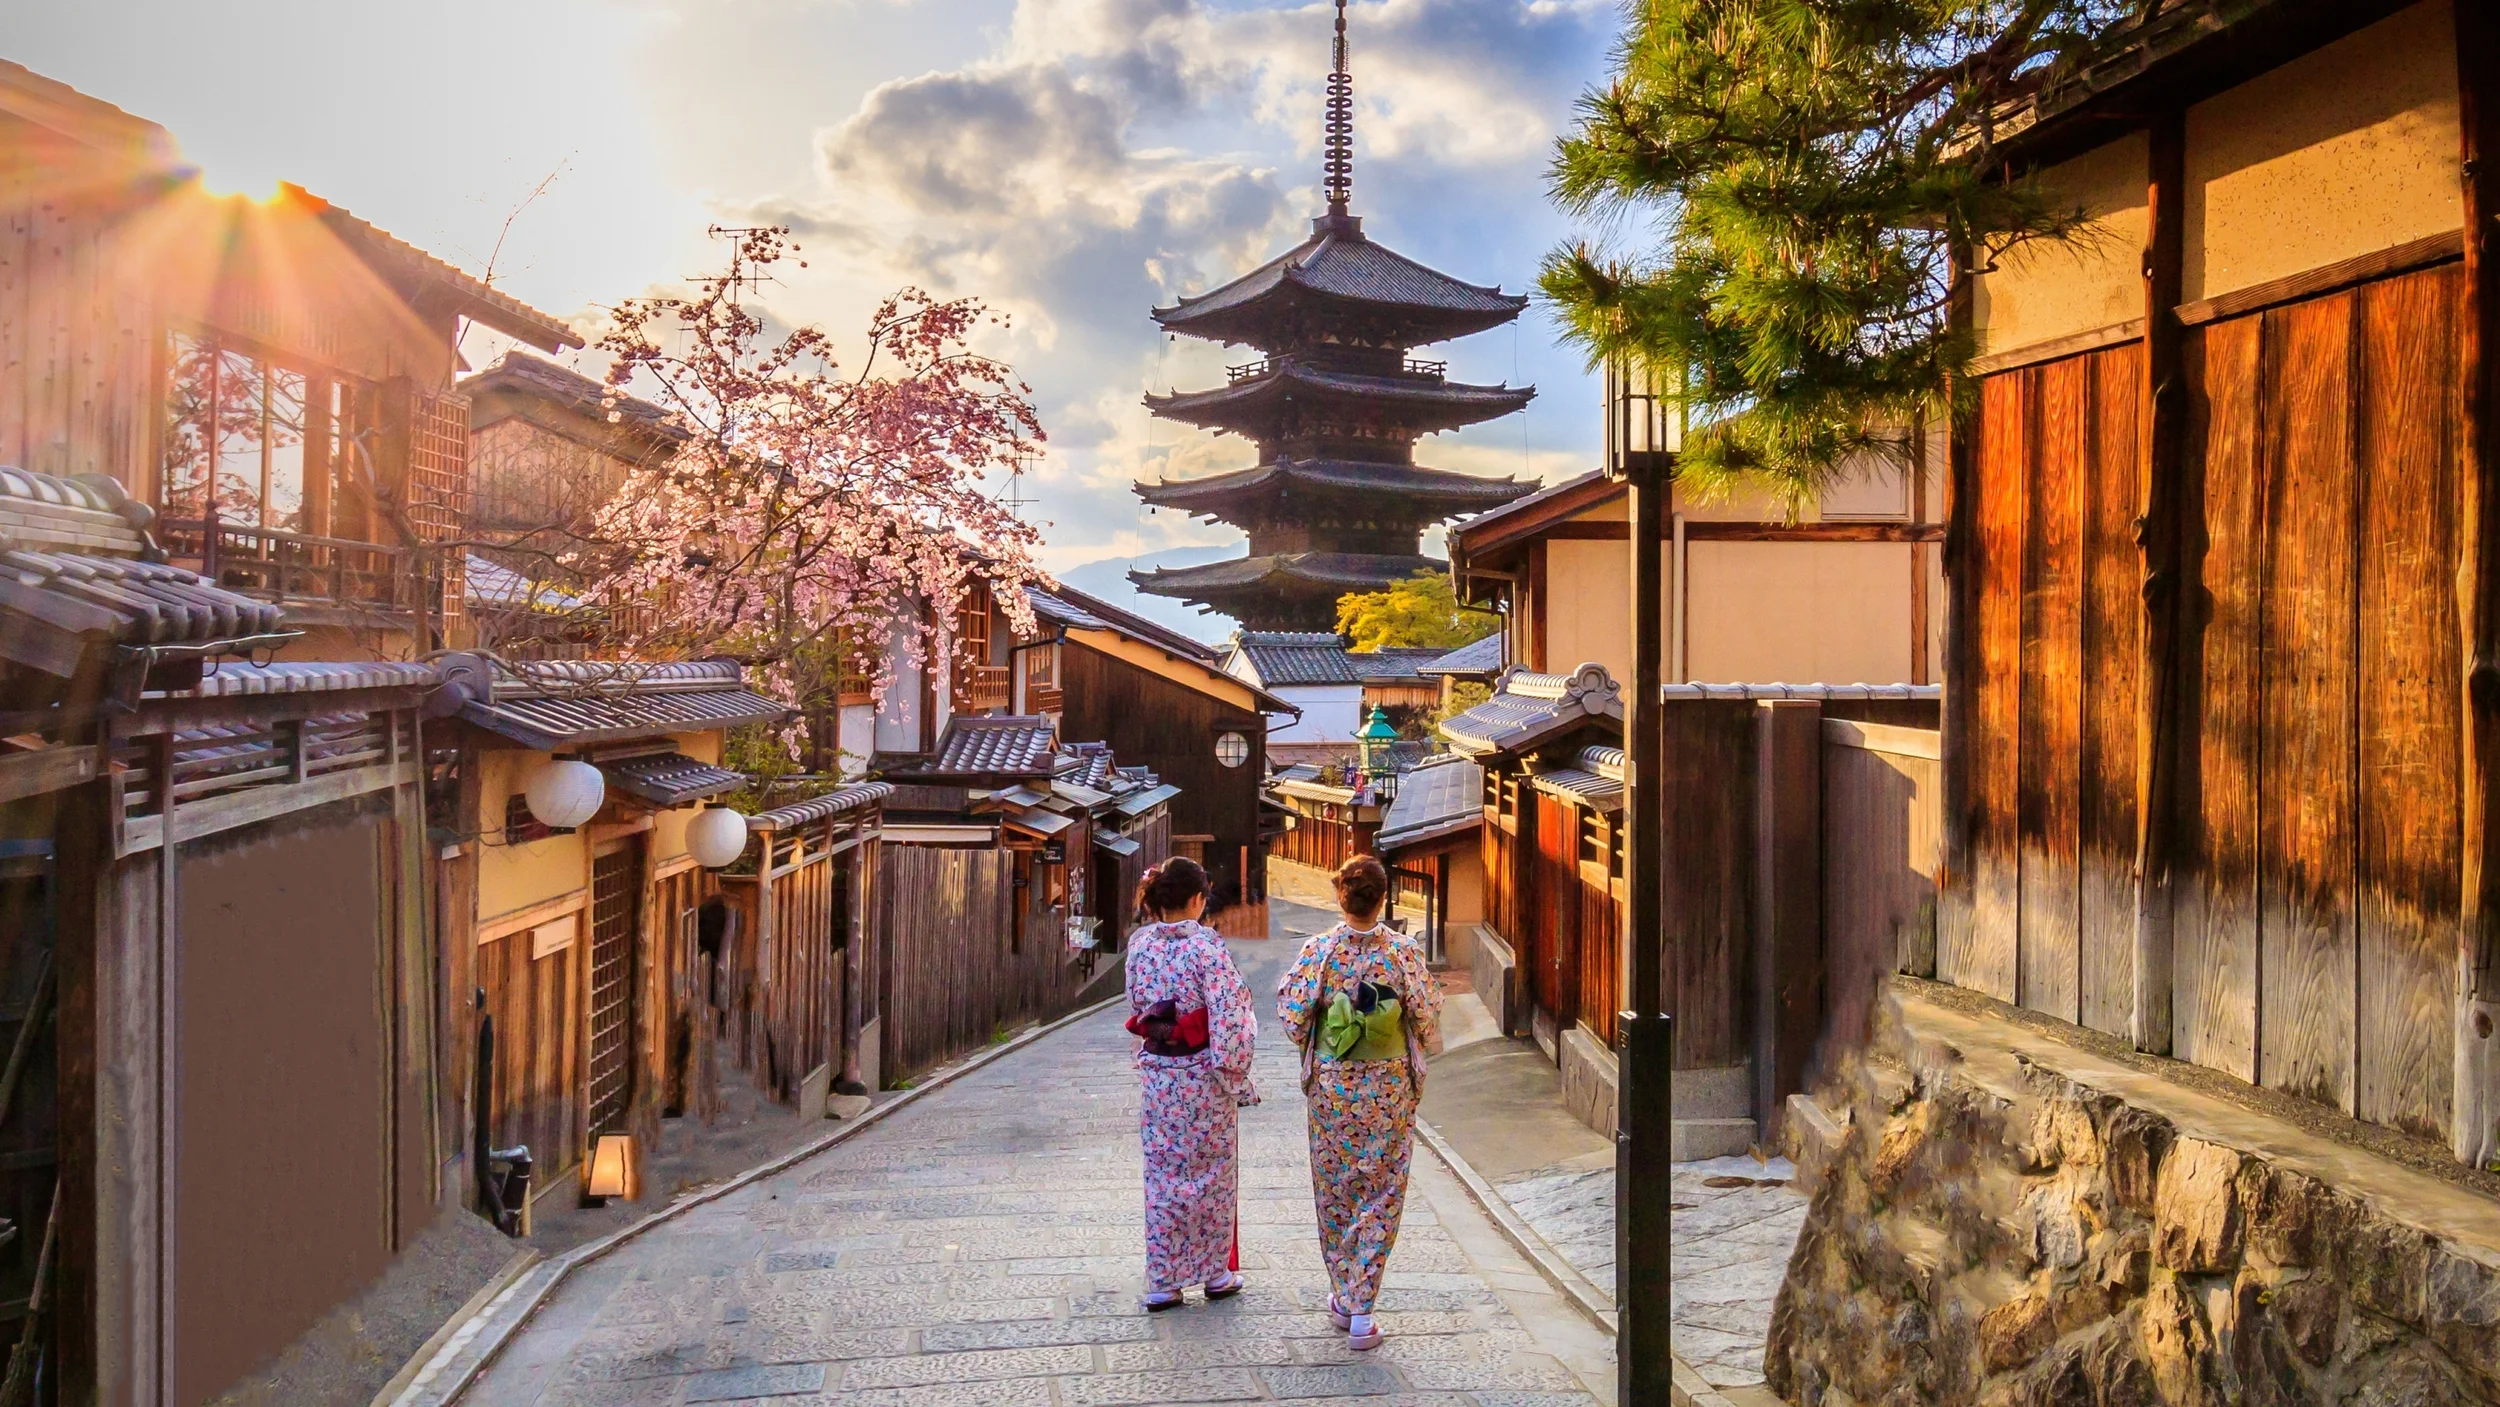 Tour Nhật Bản: Hà Nội - Osaka - Kobe - Kyoto - Nagoya - Yamanashi - Tokyo  Thưởng thức bò Kobe - Hái Trái cây - Tắm Onsen truyền thống